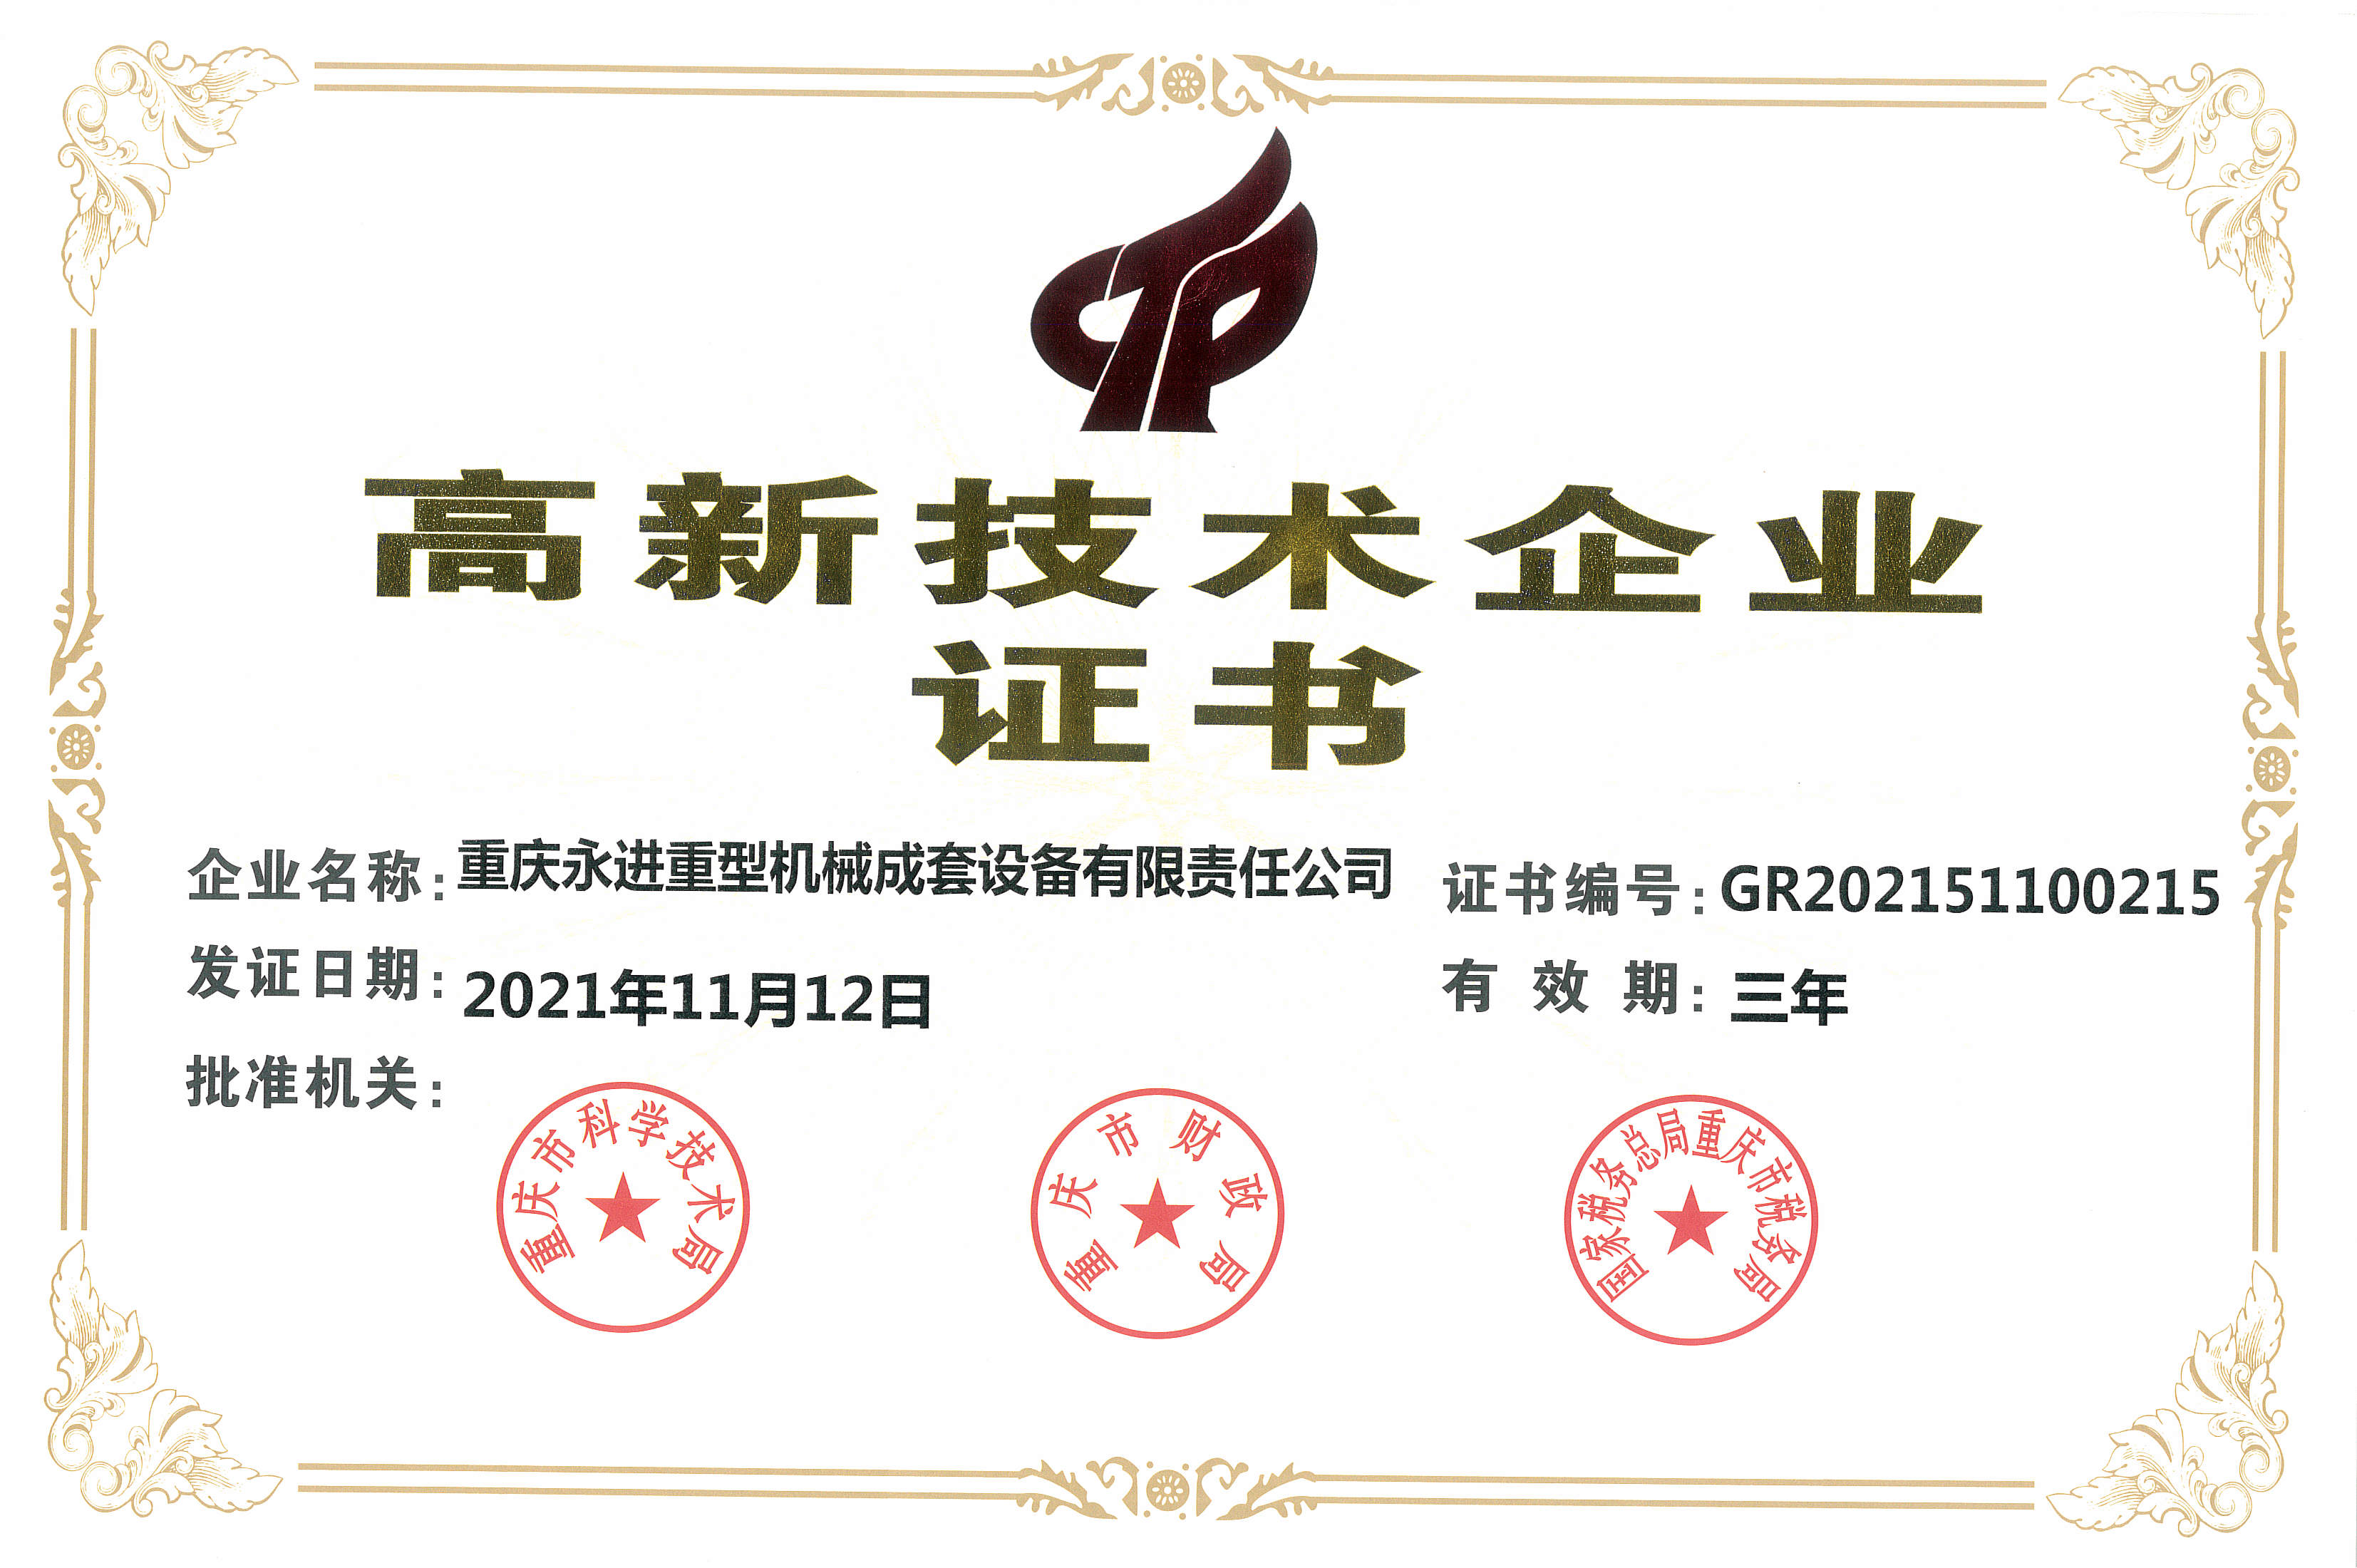 Enterprise Certification of Yongjin Heavy Machinery 